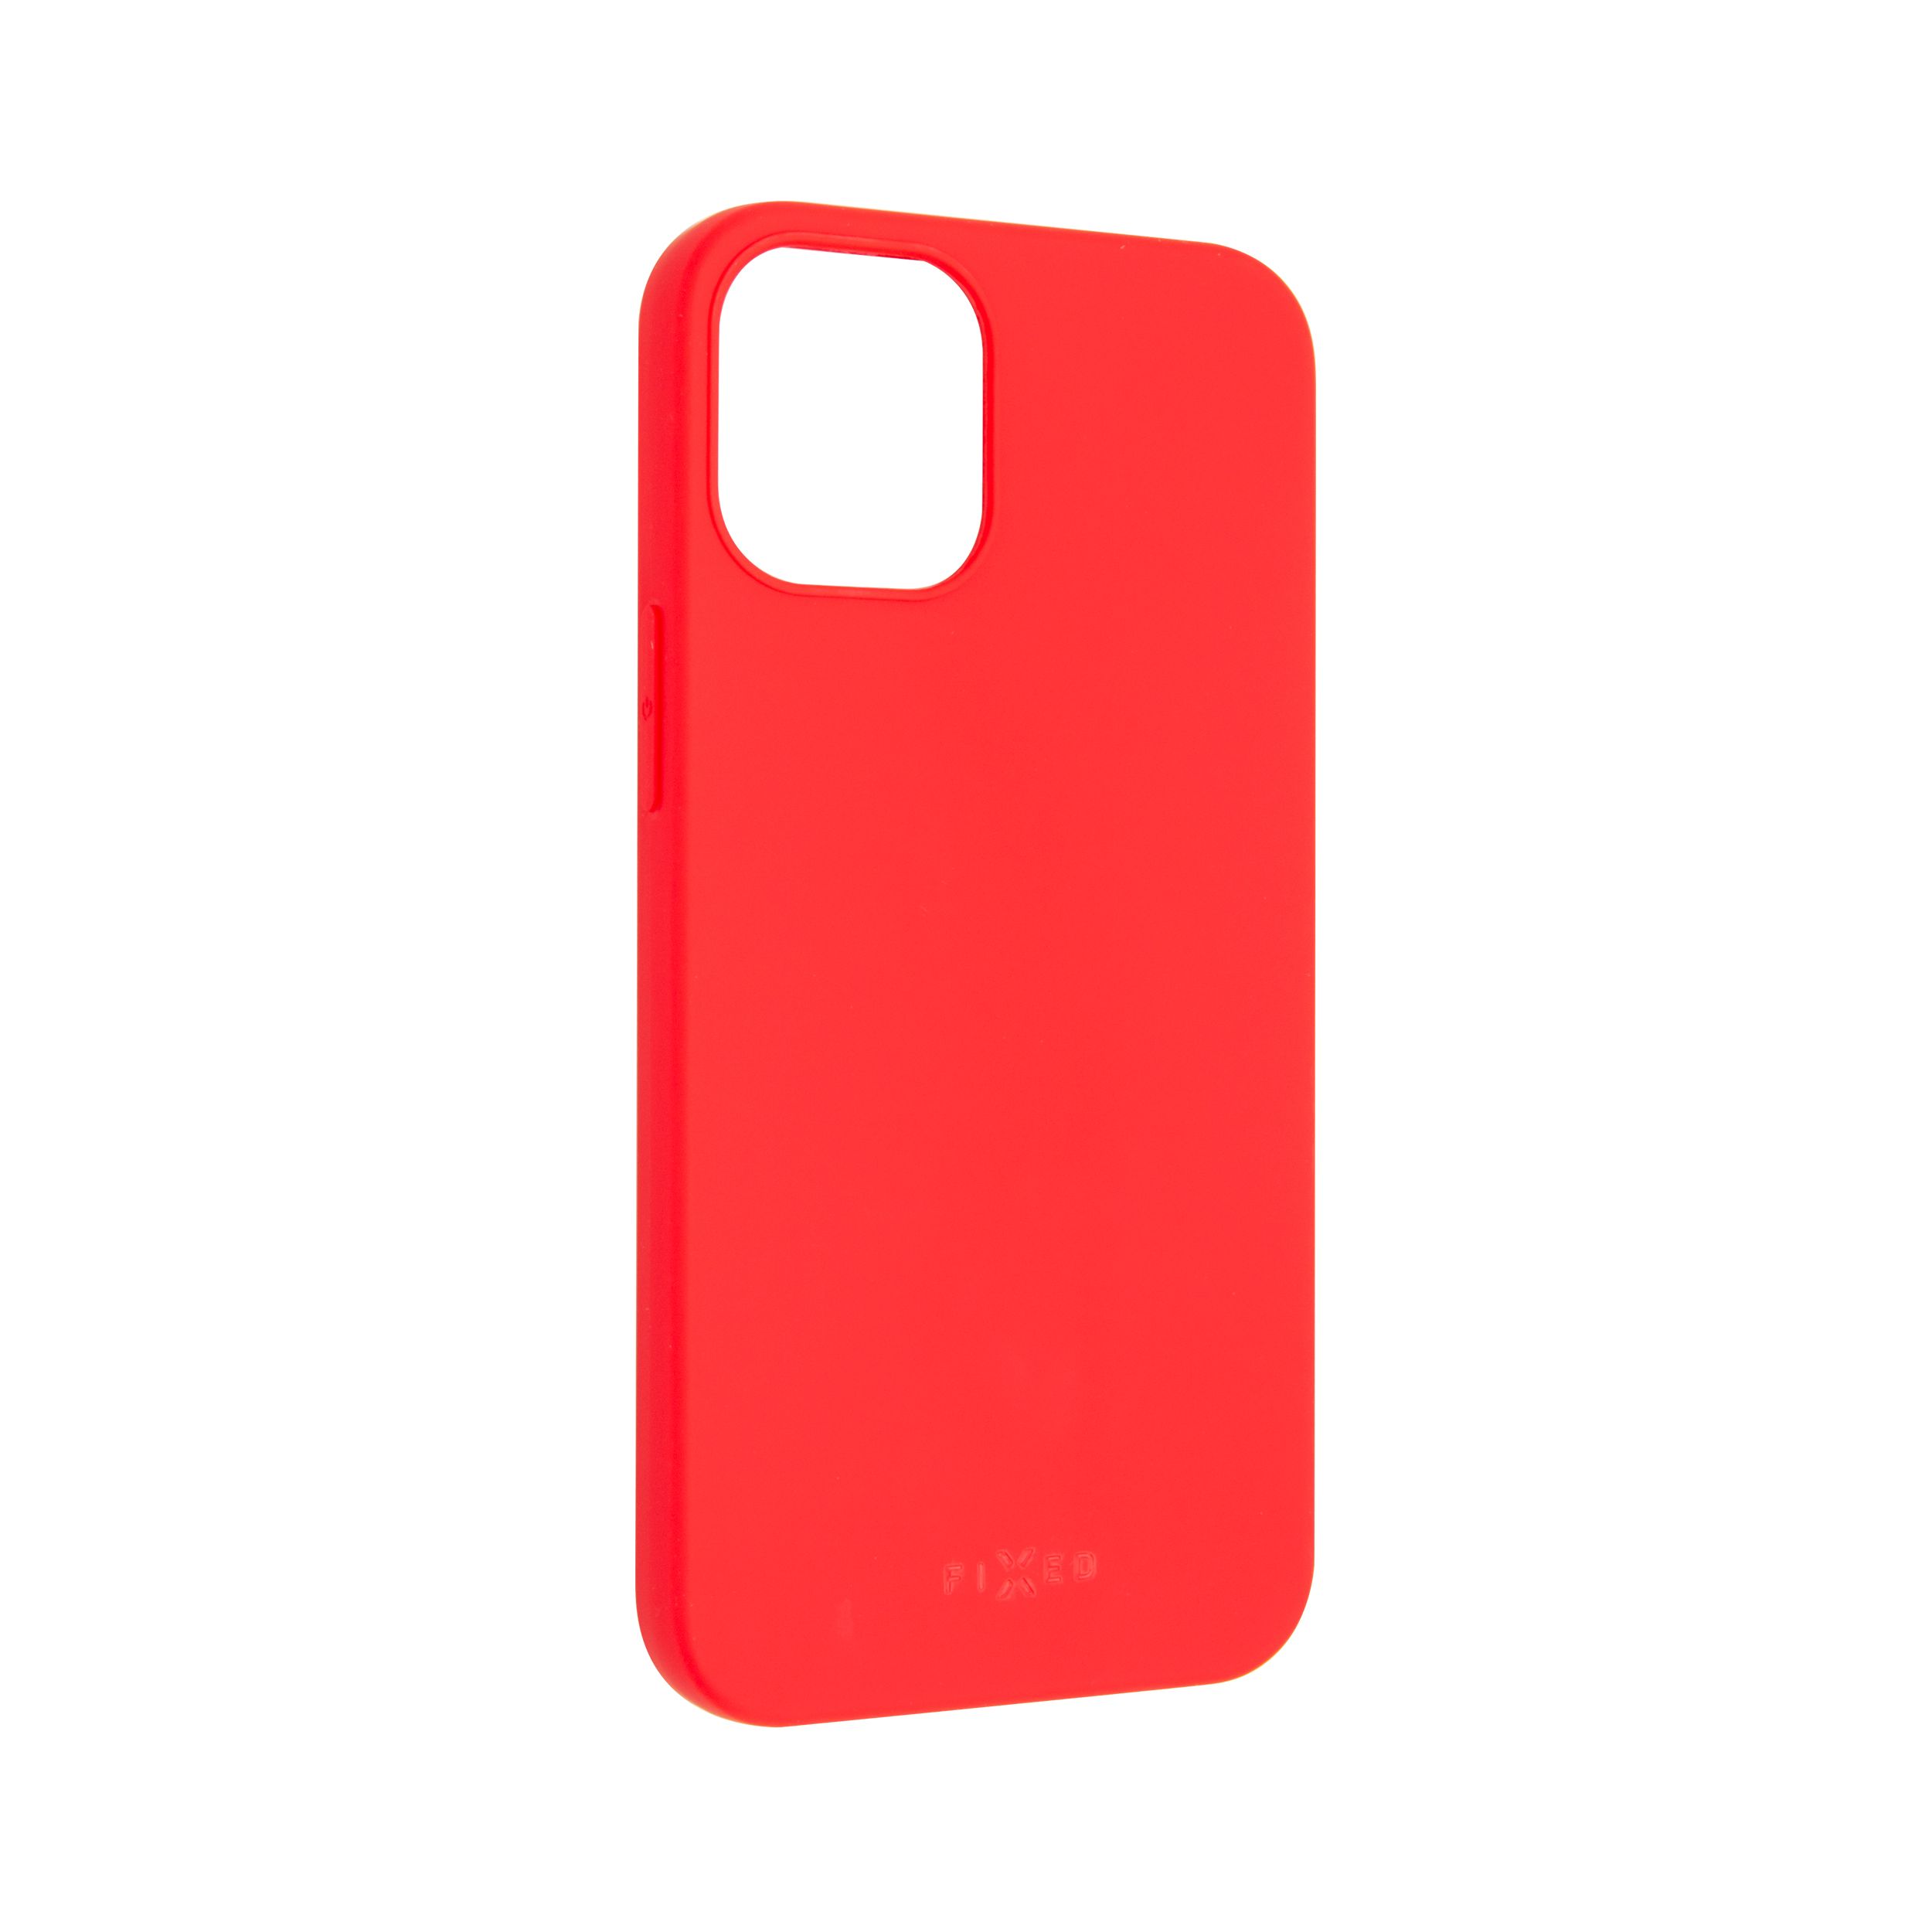 Zadní pogumovaný kryt Story pro Apple iPhone 12 mini, červený